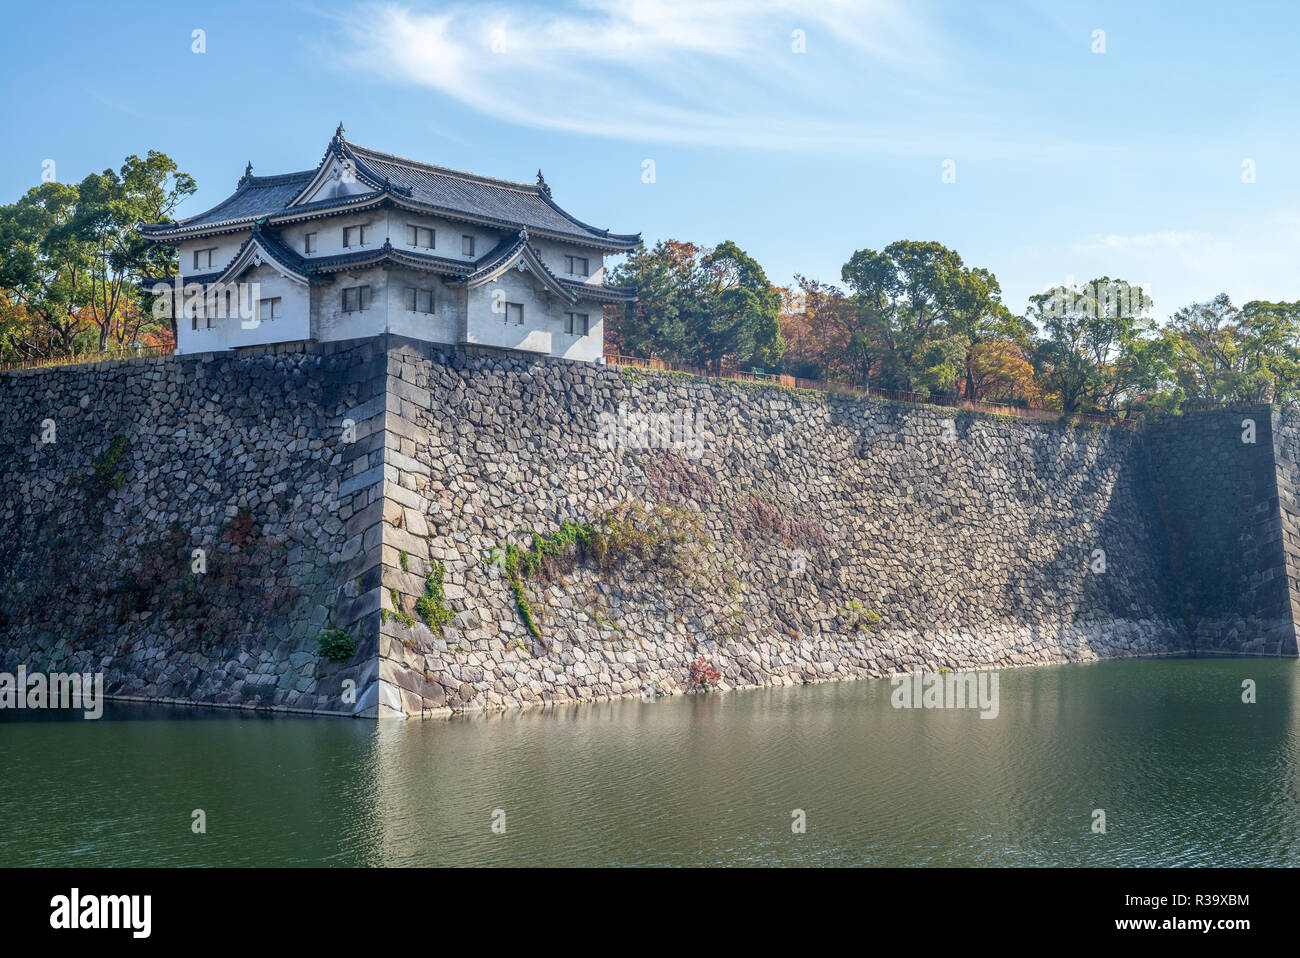 Yagura and Moat of Osaka castle in osaka, japan Stock Photo